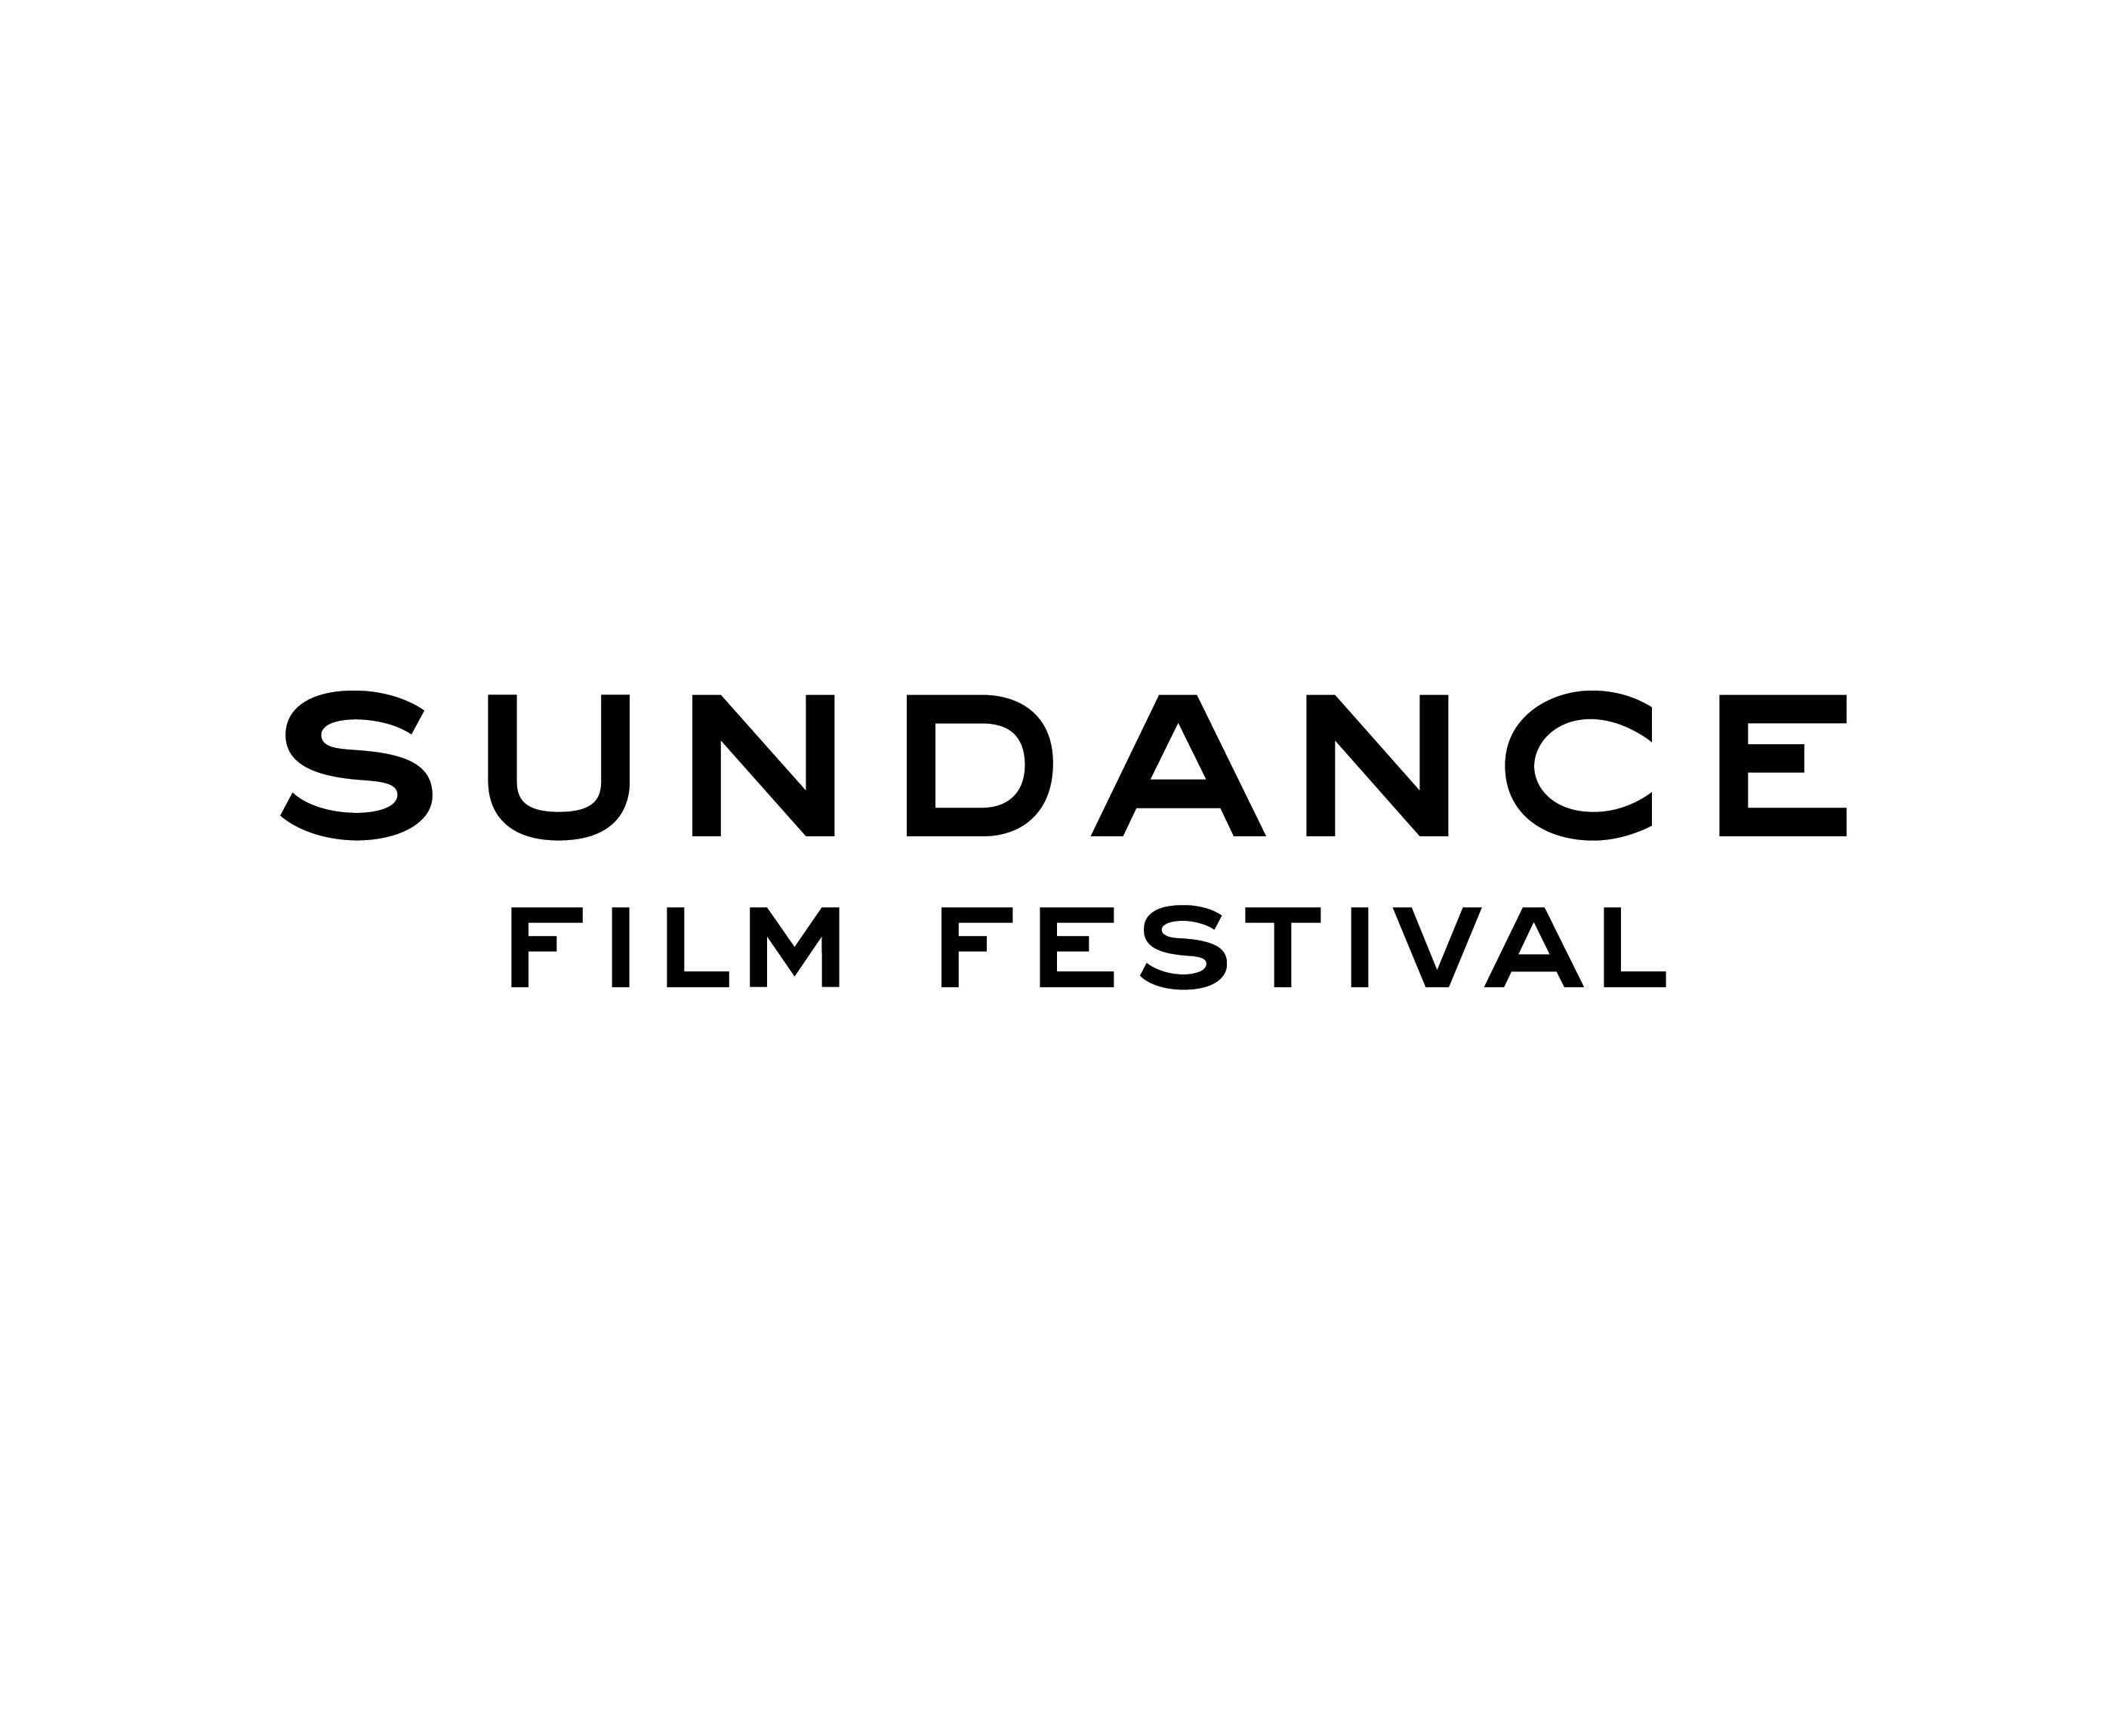 Sundance Film Festival